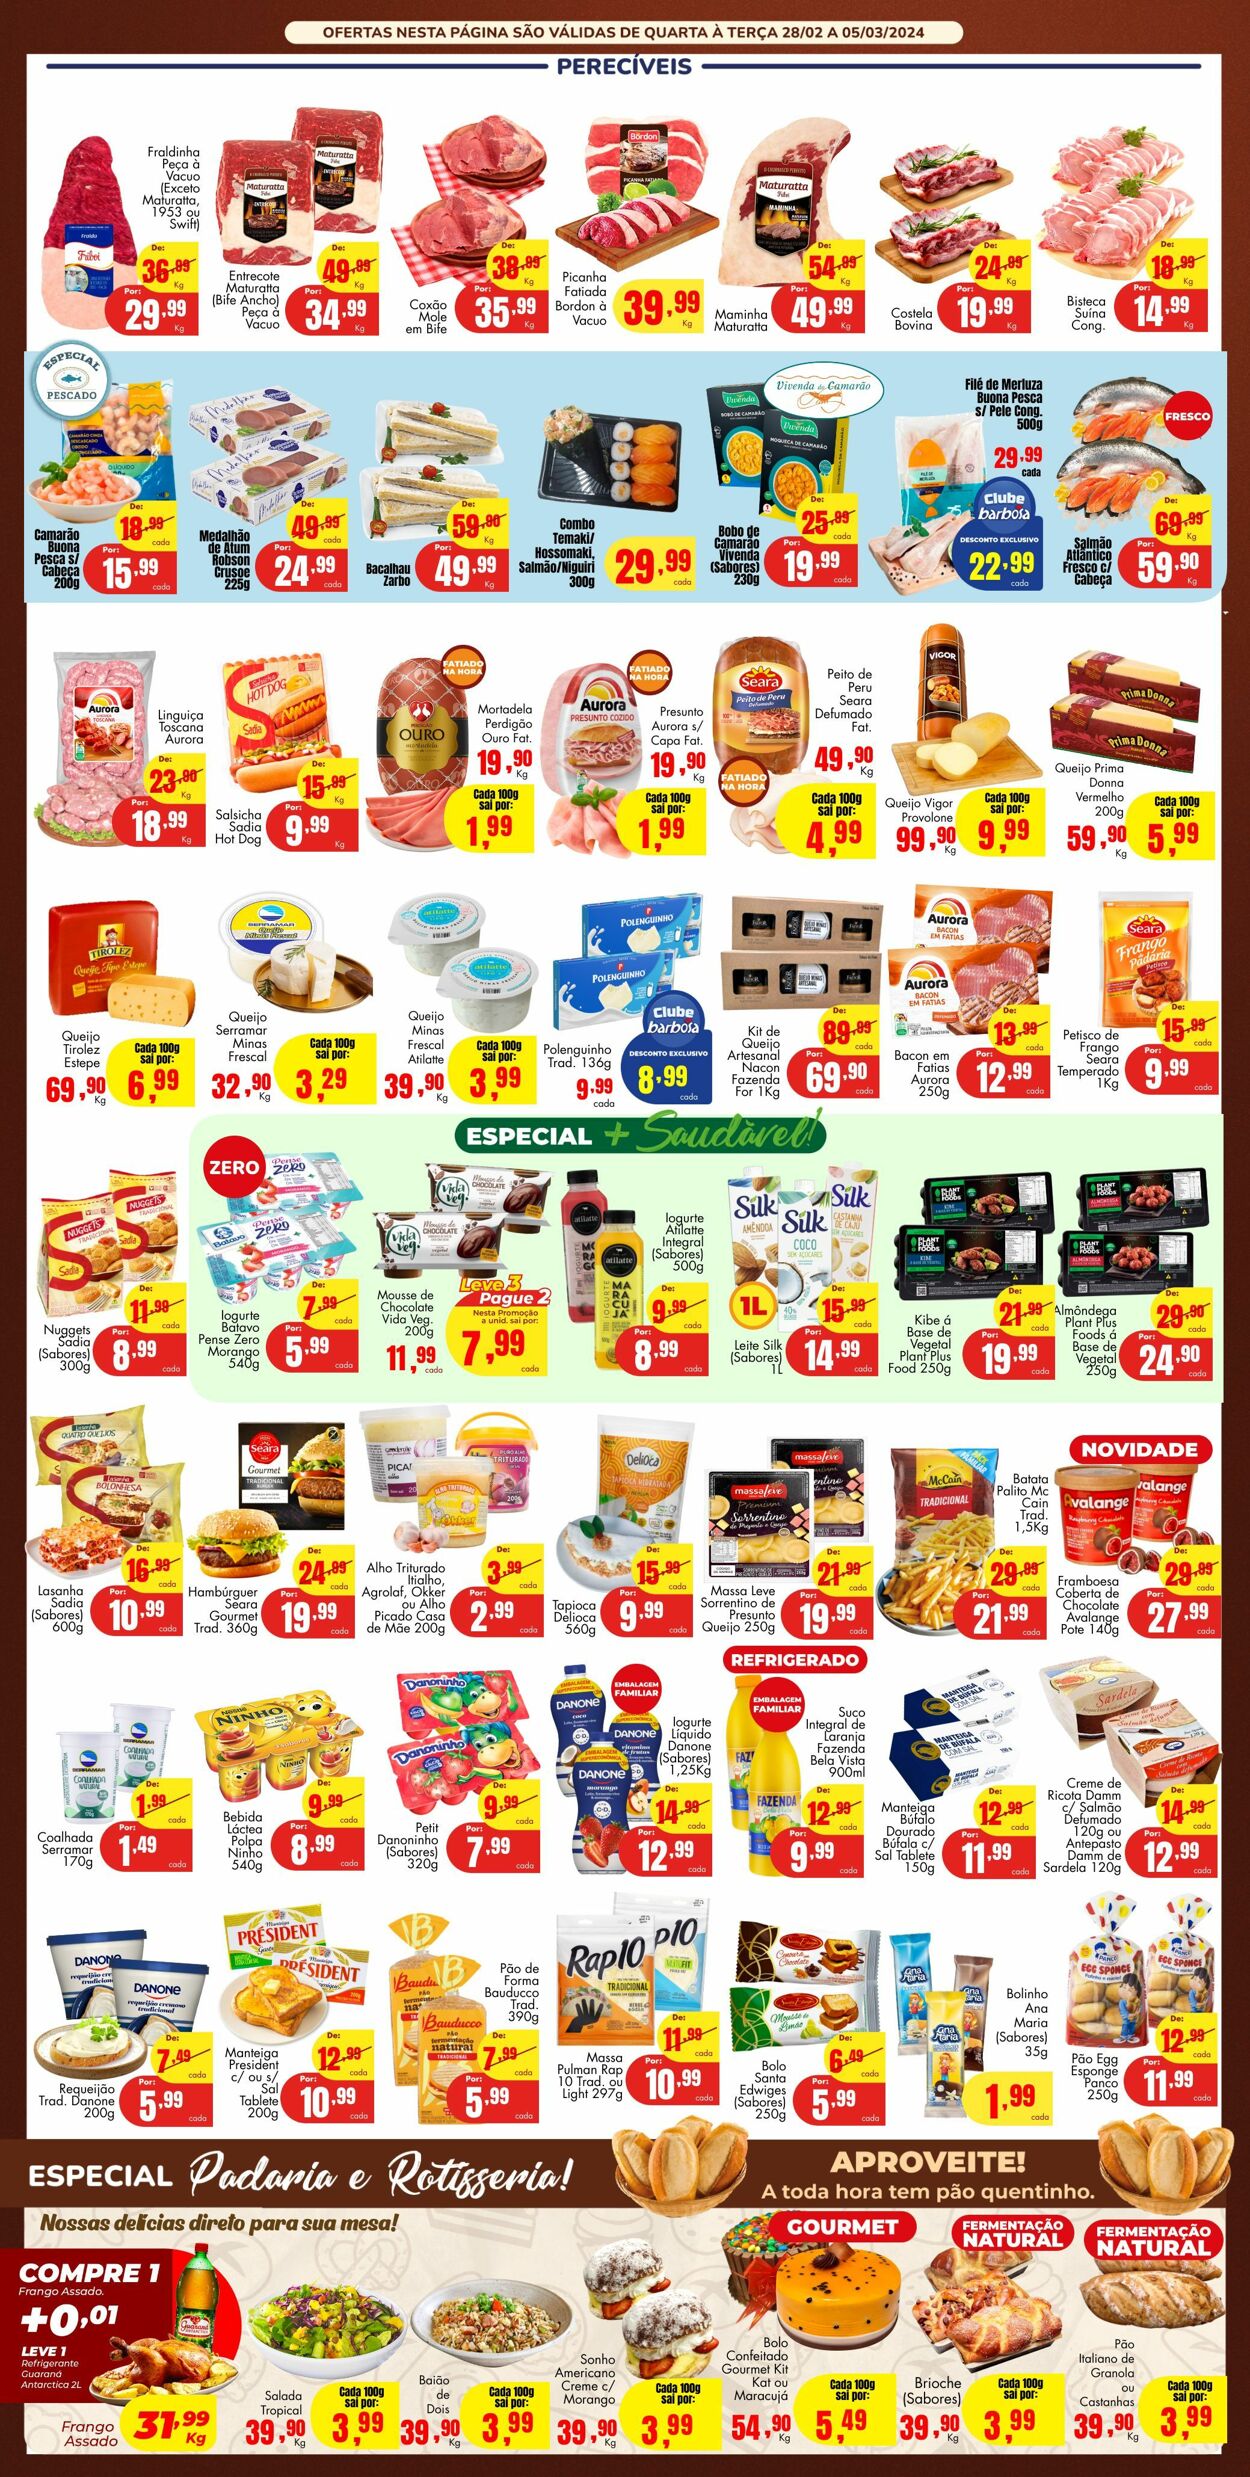 Folheto Barbosa Supermercados 28.02.2024 - 05.03.2024